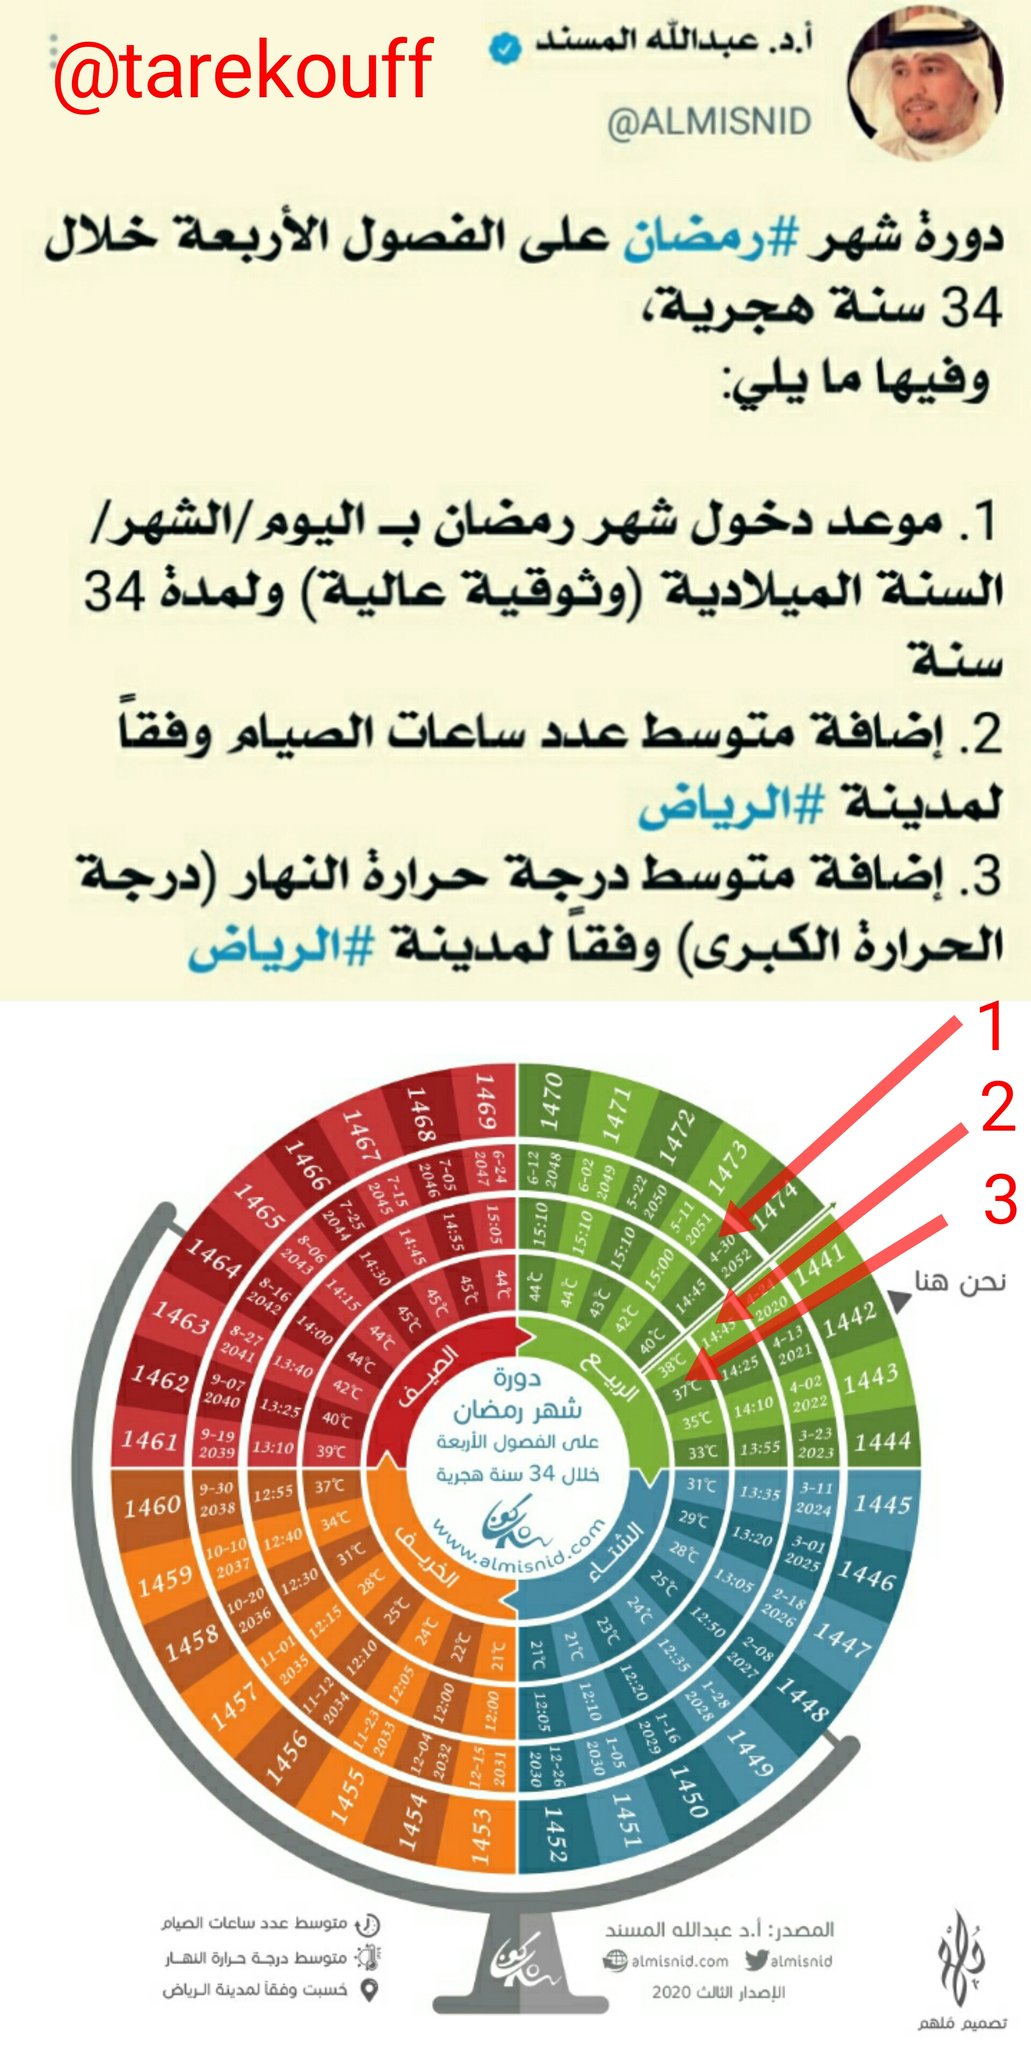 درجة الحرارة في الرياض لمدة شهر